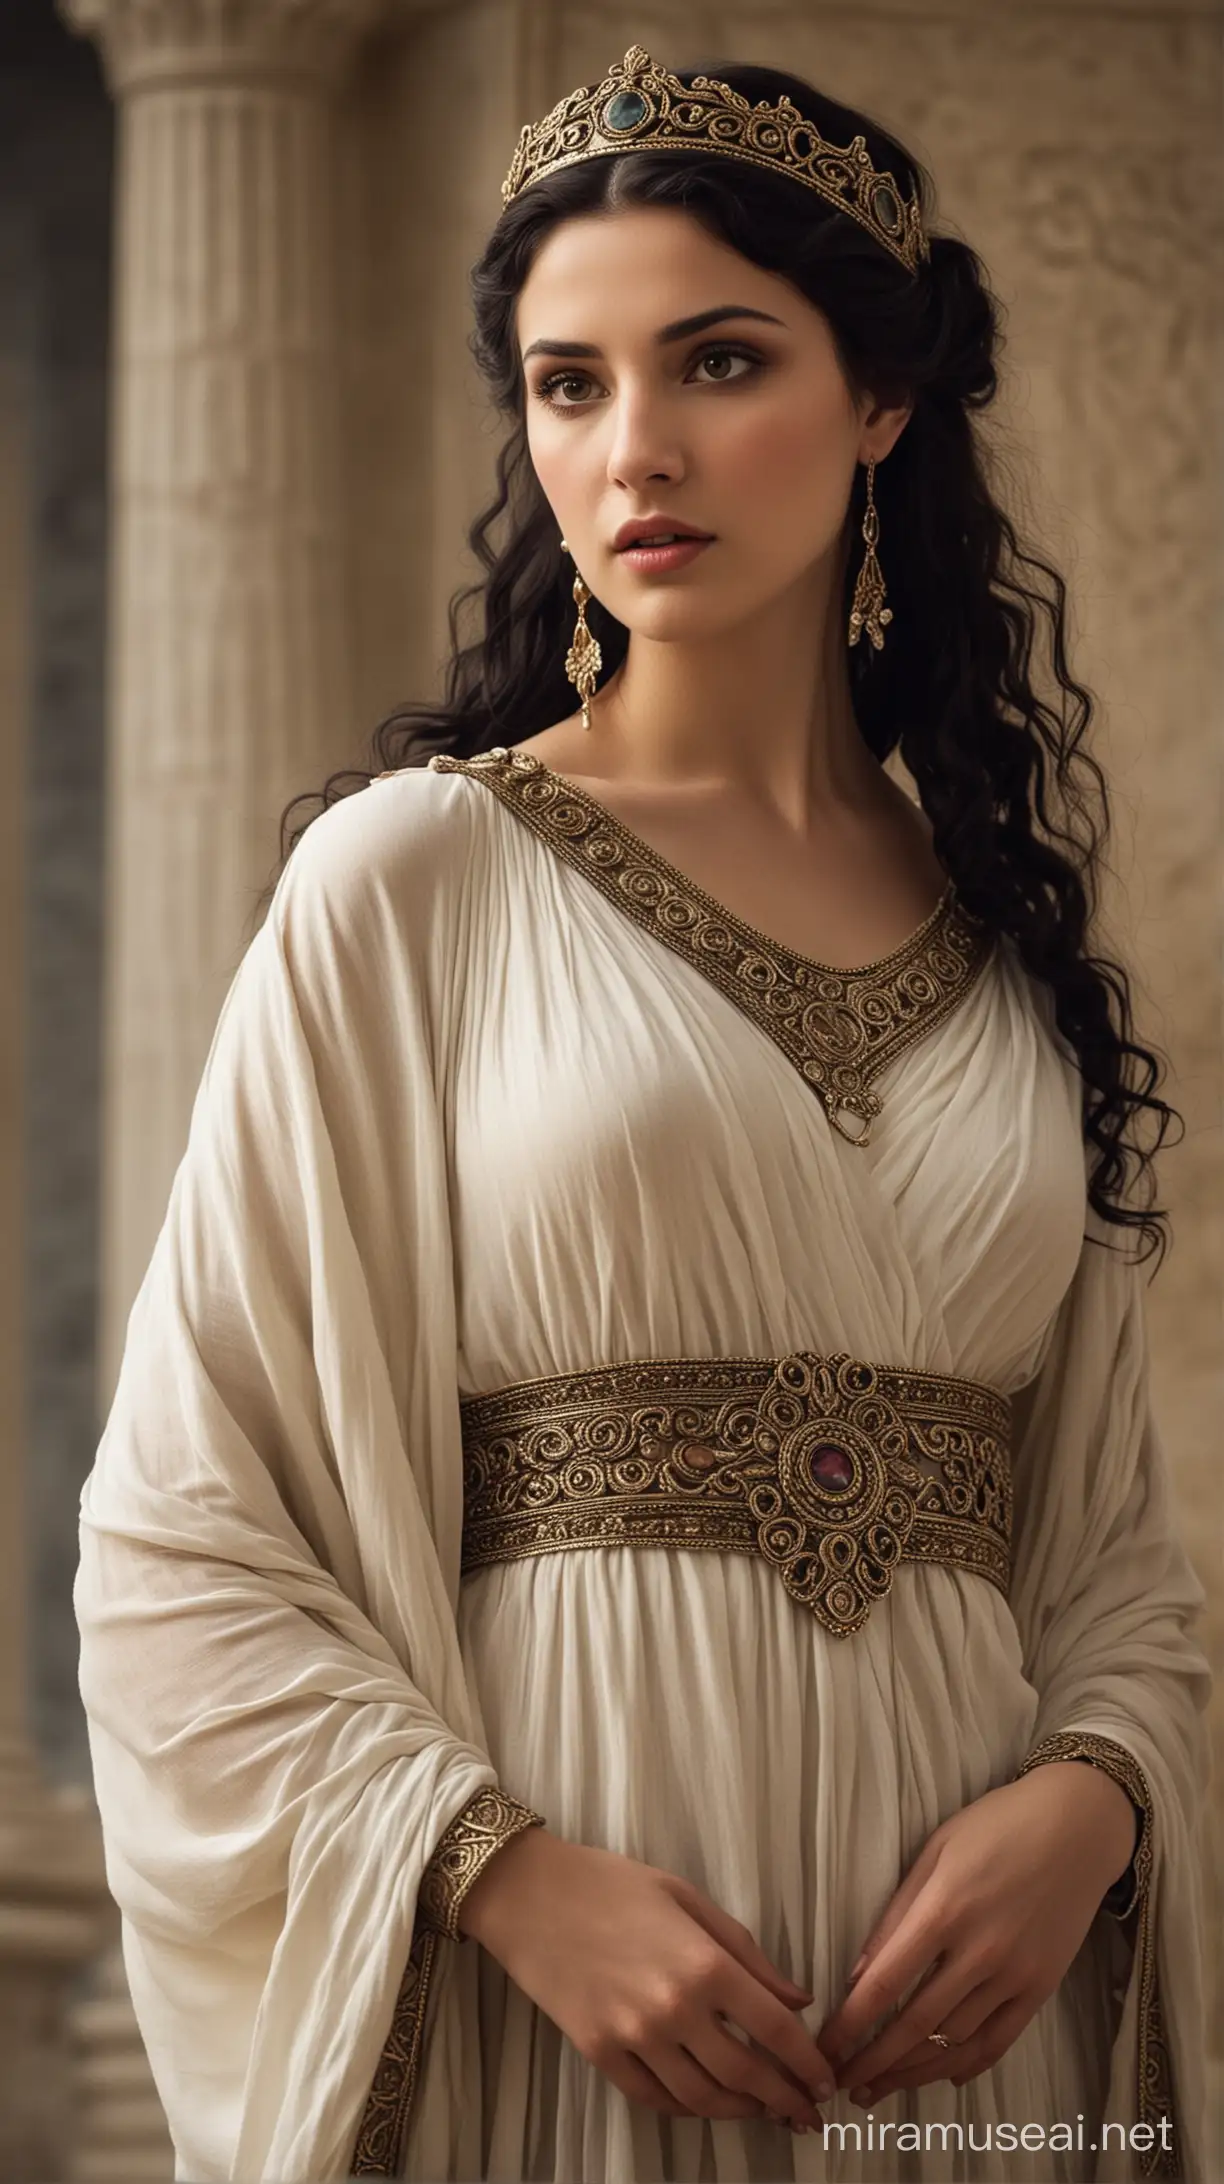 Prinecesa Medea. cabello oscuro, piel clara, vestimenta griega